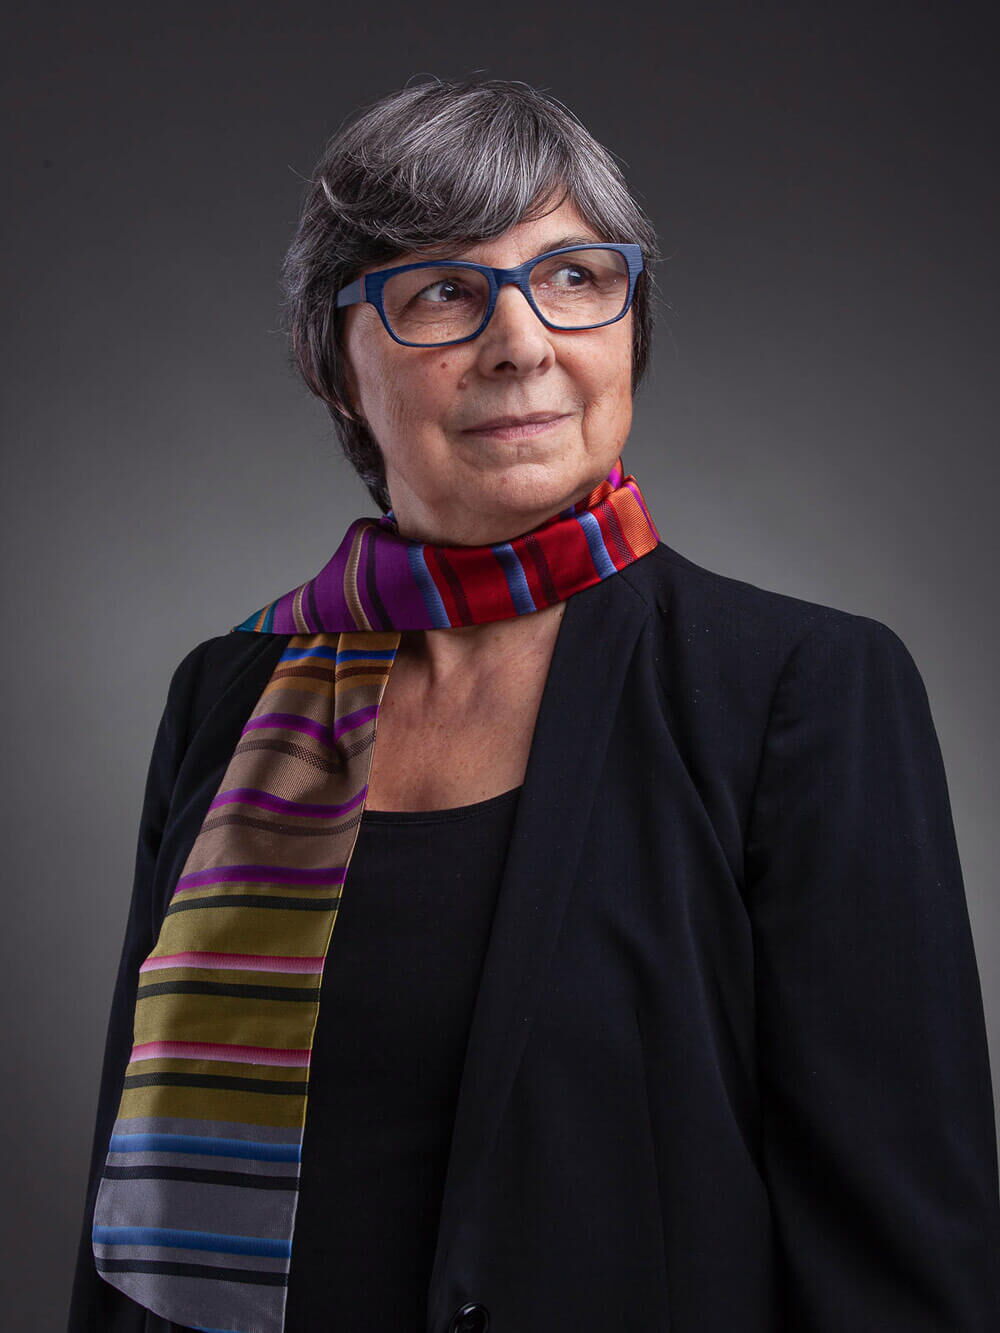 Portraitfotograf Luzern - Portraitfotografie einer Frau in schwarzem Anzug mit farbigem Seidenschal